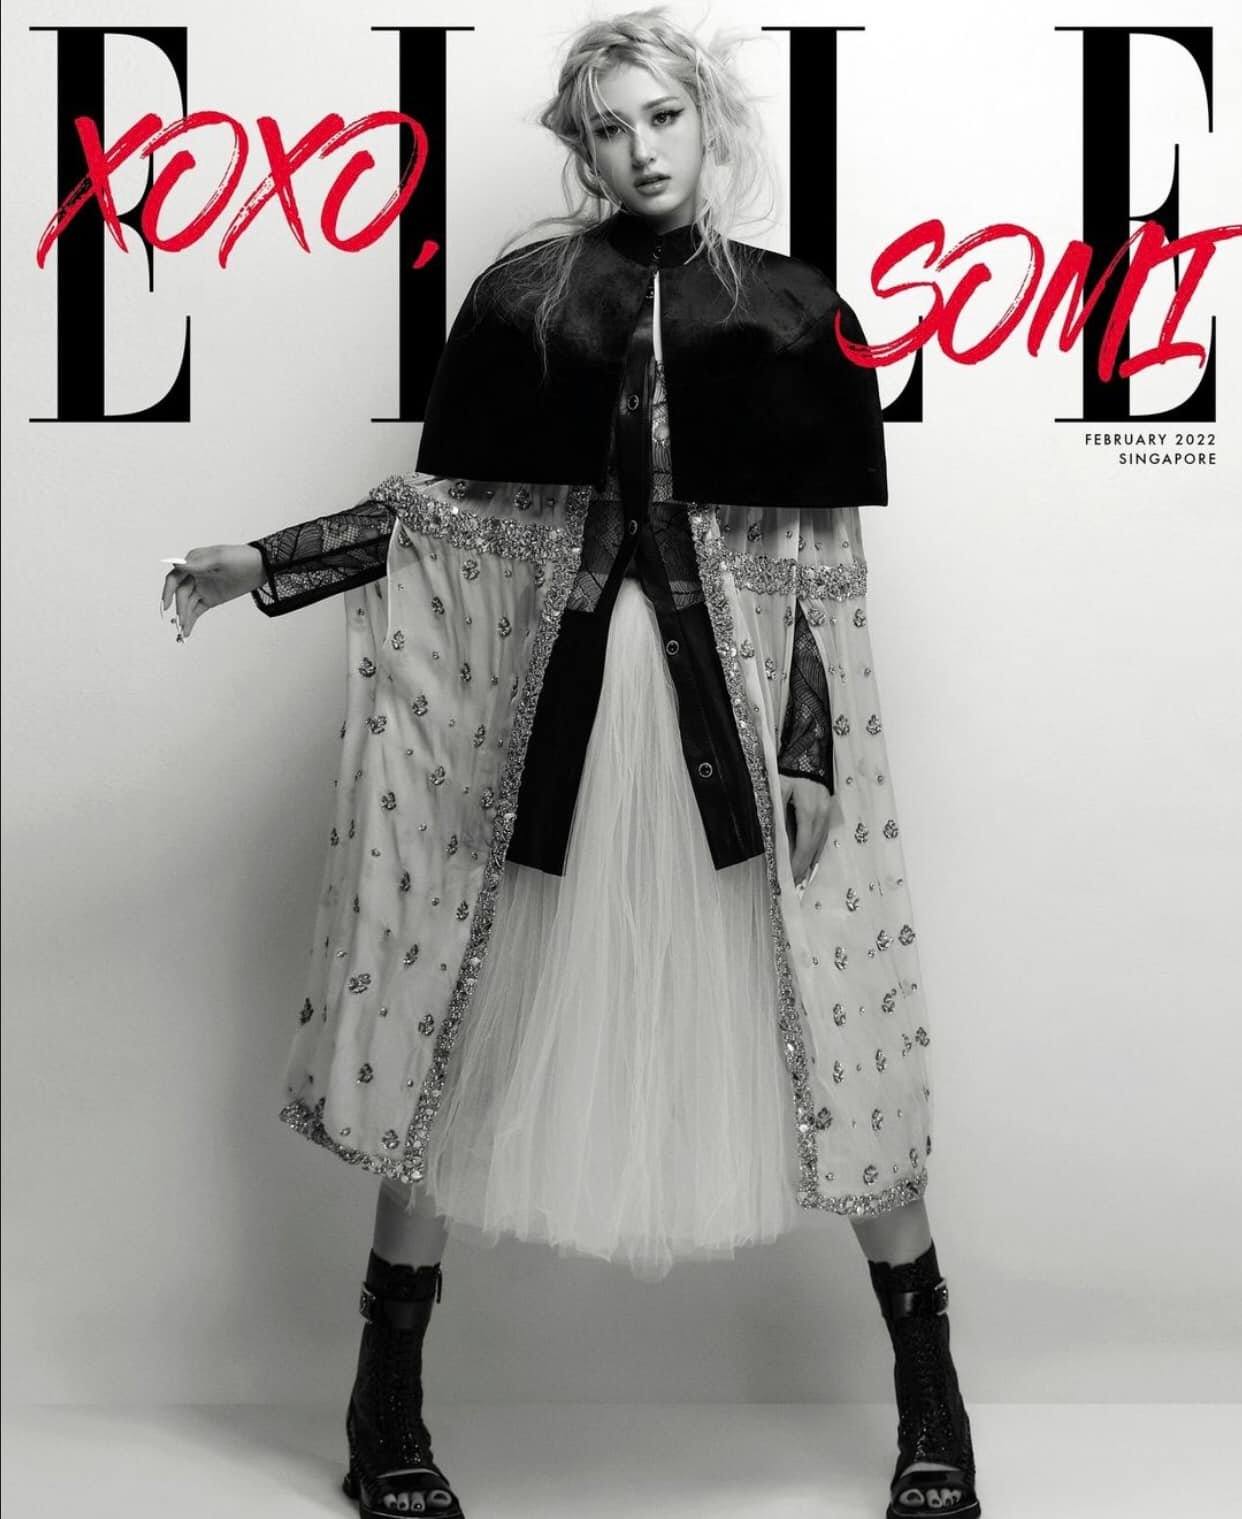 Xuất hiện trên bìa tạp chí Elle Singapore, Jeon Somi tiếp tục khoác lên người những thiết kế độc đáo của Louis Vuiton. Mặc dù diện tầng tầng lớp lớp các item rườm rà nhưng thần thái sang chảnh cùng body vạn người mê của nữ idol vẫn giúp cô toả sáng.